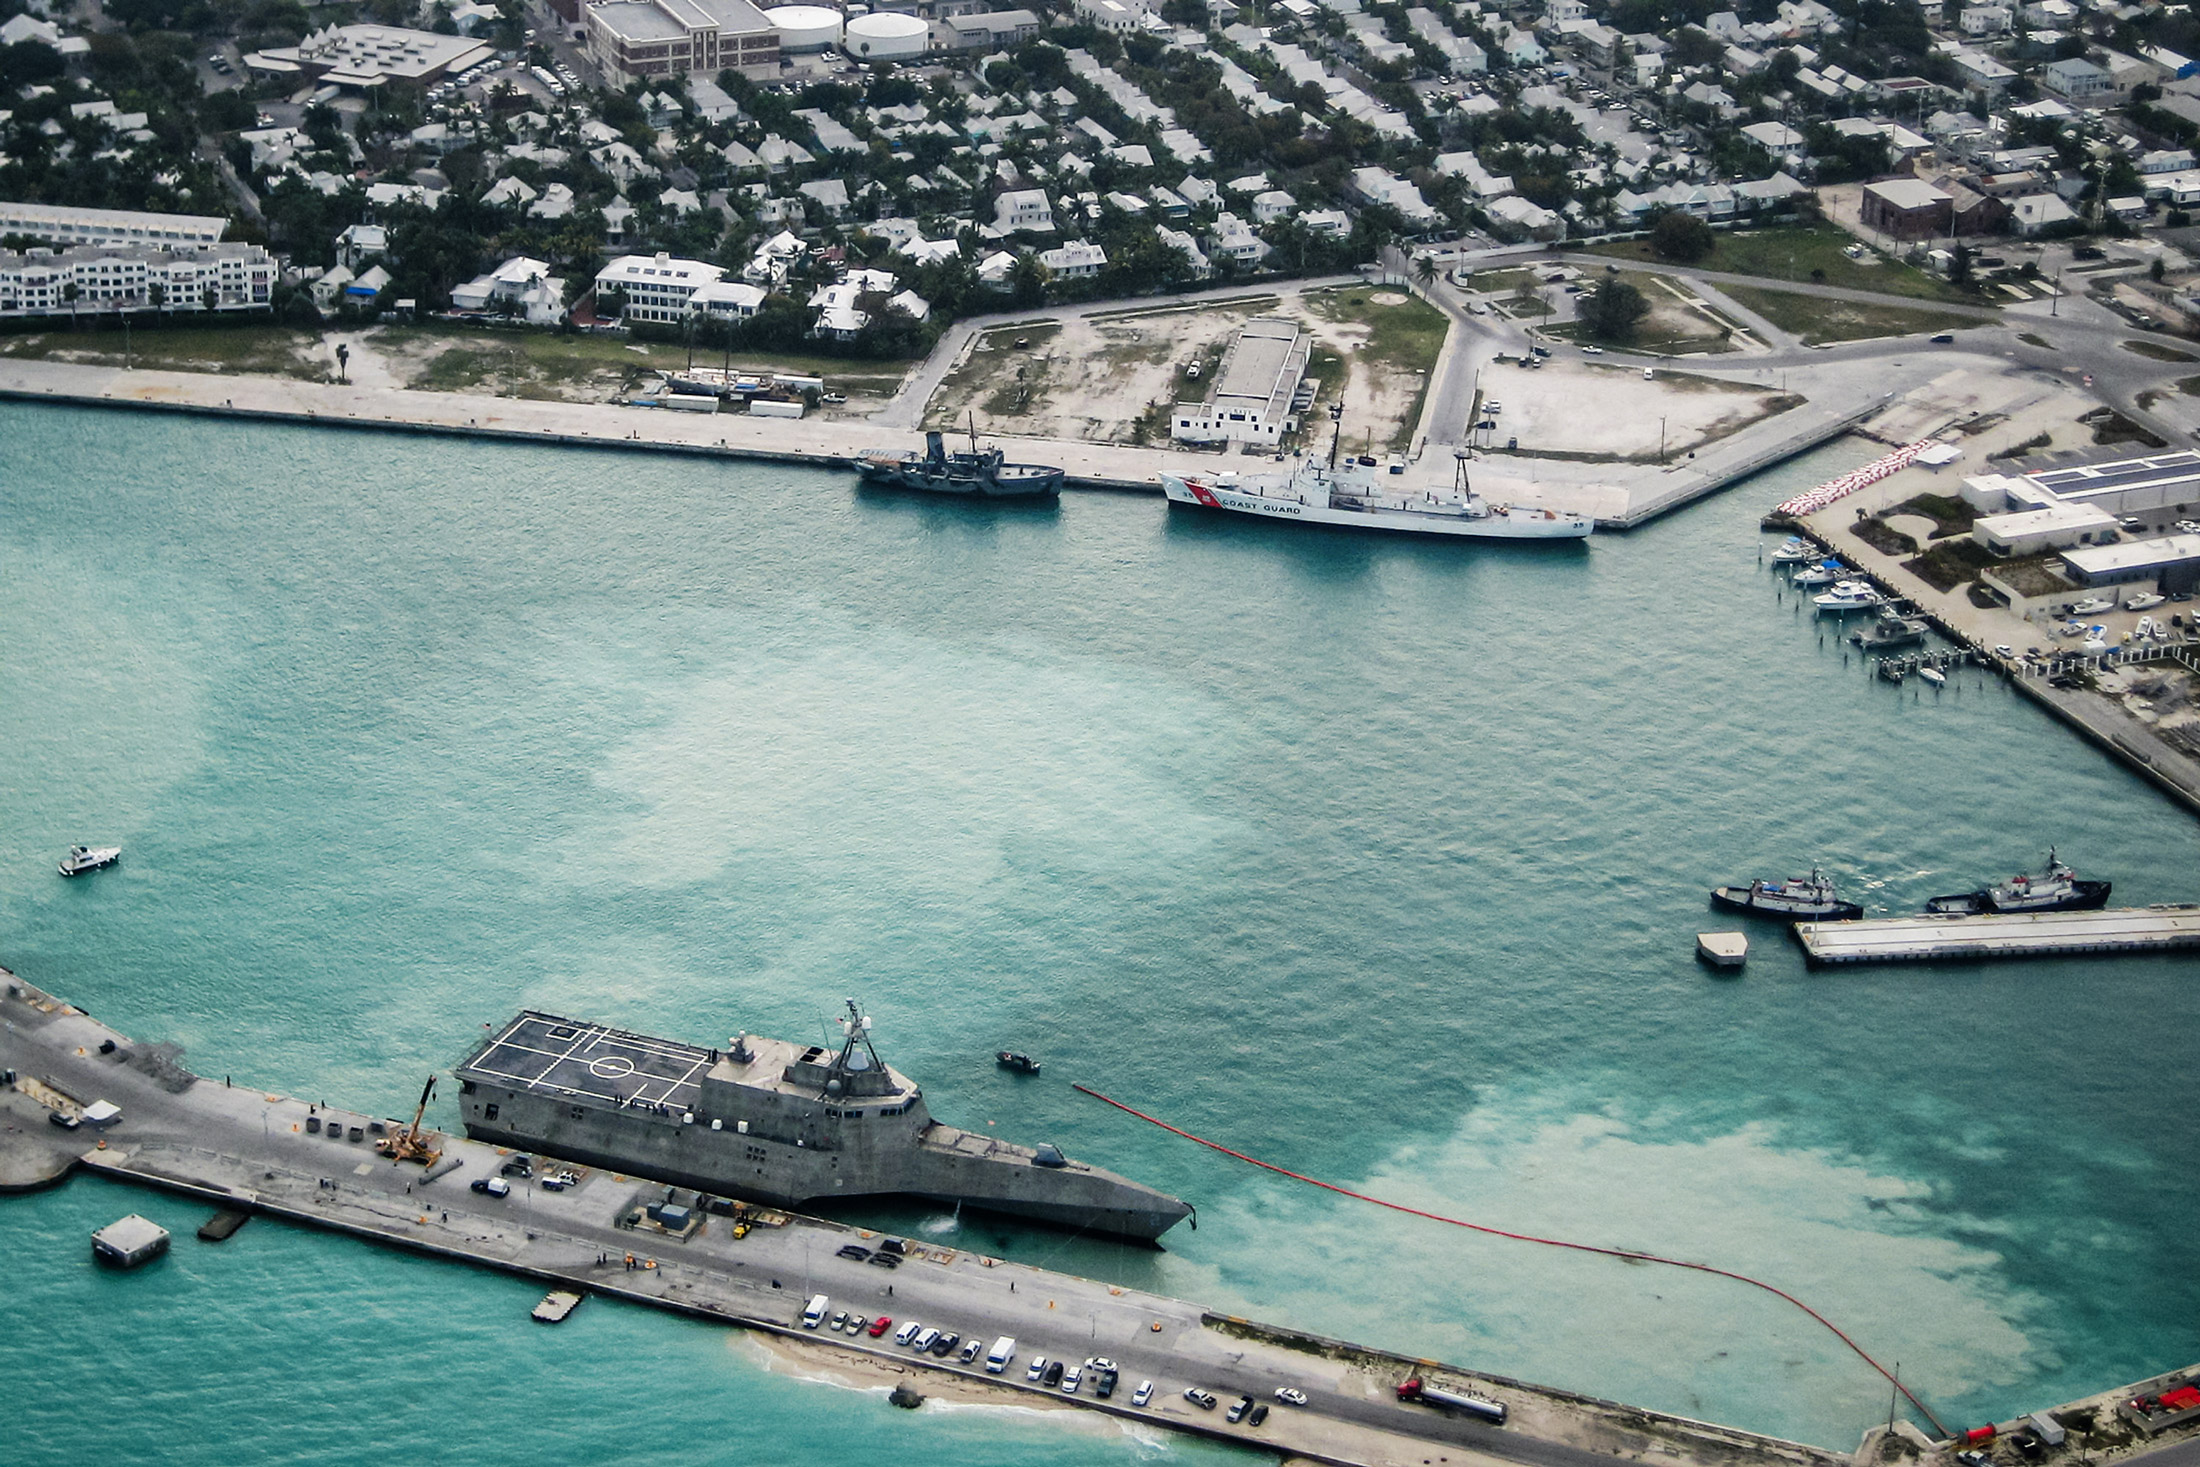 Các tàu Hải quân Hoa Kỳ cập cảng Trạm Không quân Hải quân Key West ở Key West, Florida, vào ngày 29/03/2010. Một đô đốc hải quân gần đây cho biết các công dân ngoại quốc đến từ Trung Quốc và Nga đã cố gắng xâm nhập các căn cứ Hải quân “hai hoặc ba lần một tuần.” (Ảnh: Nicholas Kontodiakos/Hải quân Hoa Kỳ qua Getty Images)